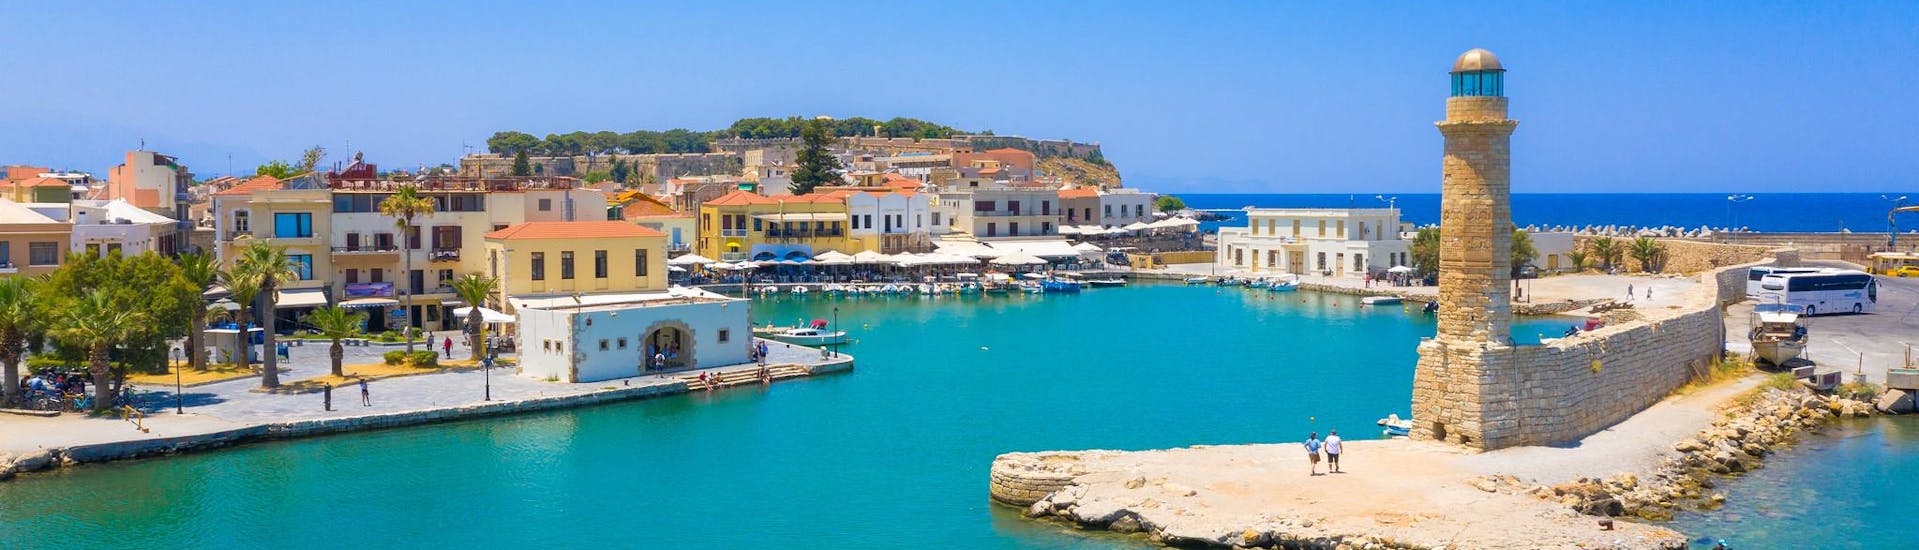 Zicht op de oude Venetiaanse haven van Rethymno, een prachtig vertrekpunt voor boottochten op Kreta.